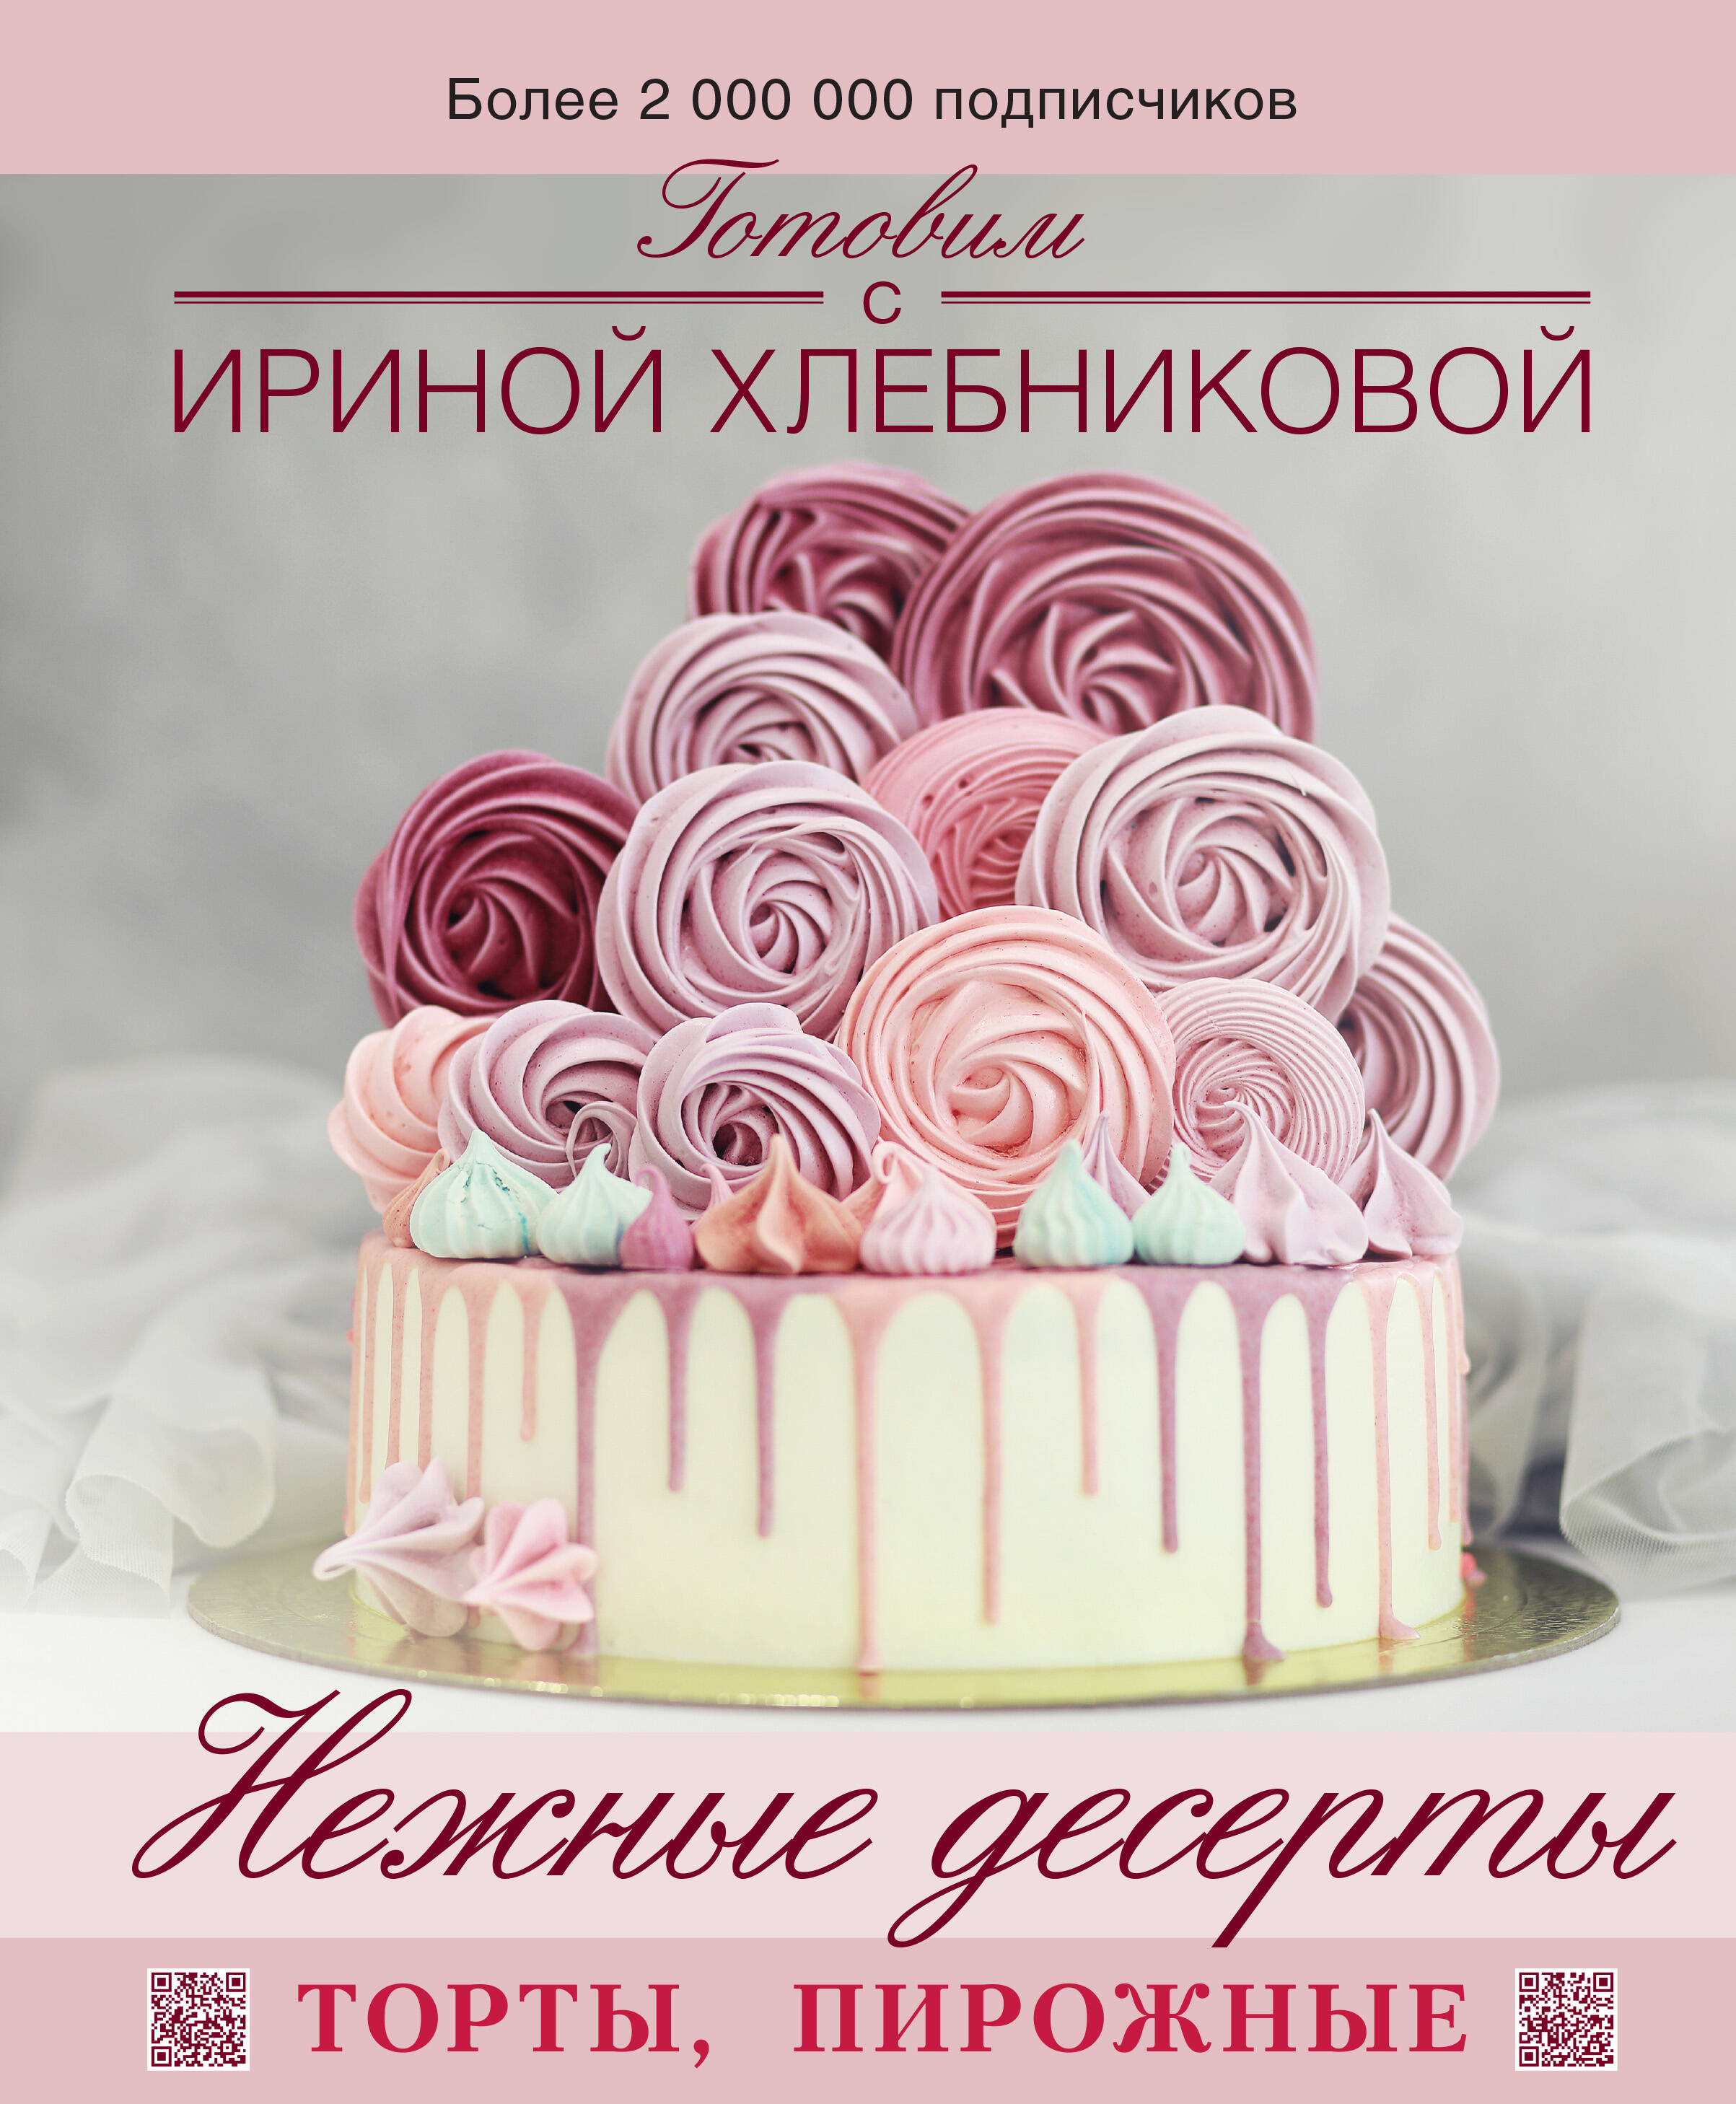 Хлебникова Ирина Николаевна - Нежные десерты. Торты, пирожные